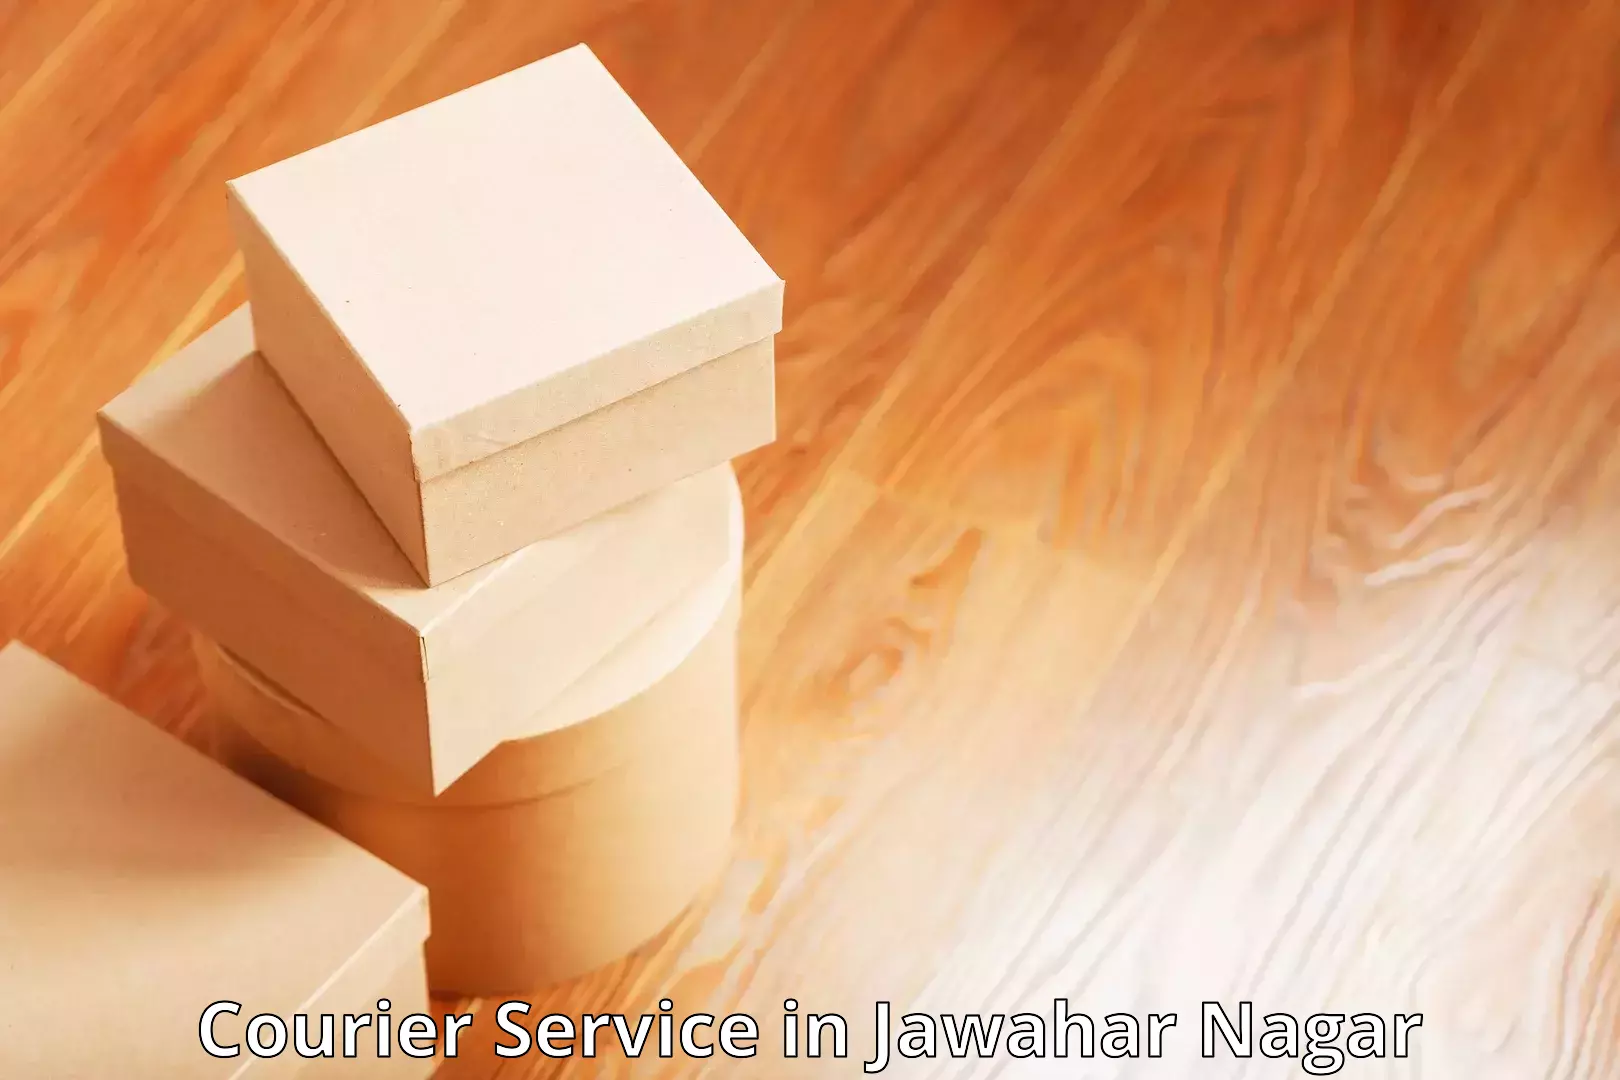 Package tracking in Jawahar Nagar